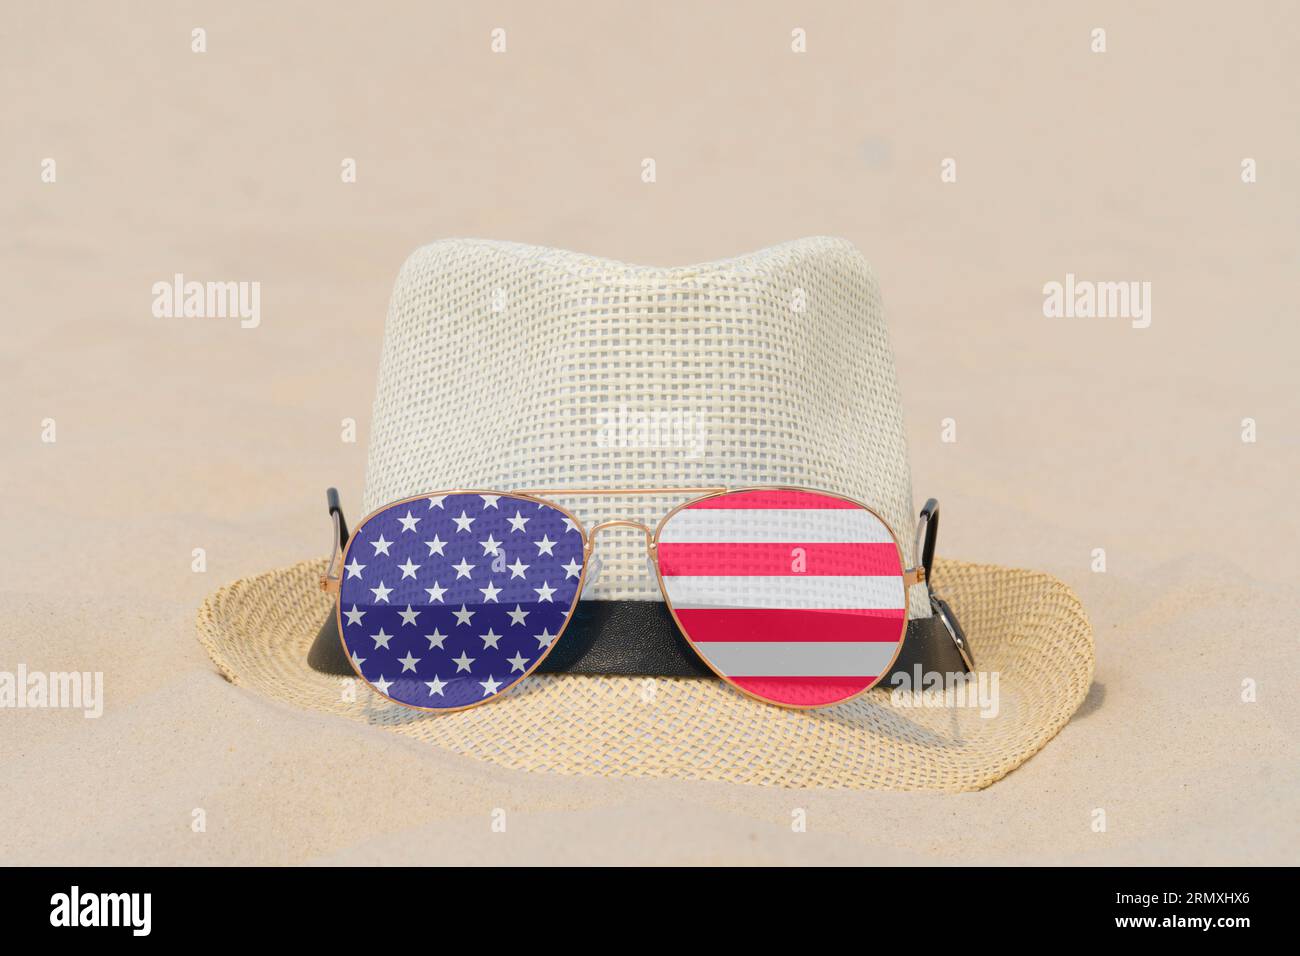 Sonnenbrille mit Brille in Form einer Flagge der USA und einem Hut liegen auf Sand. Konzept von Sommerferien und Reisen in den USA. Sommerruhe. Weihnachtszeit Stockfoto